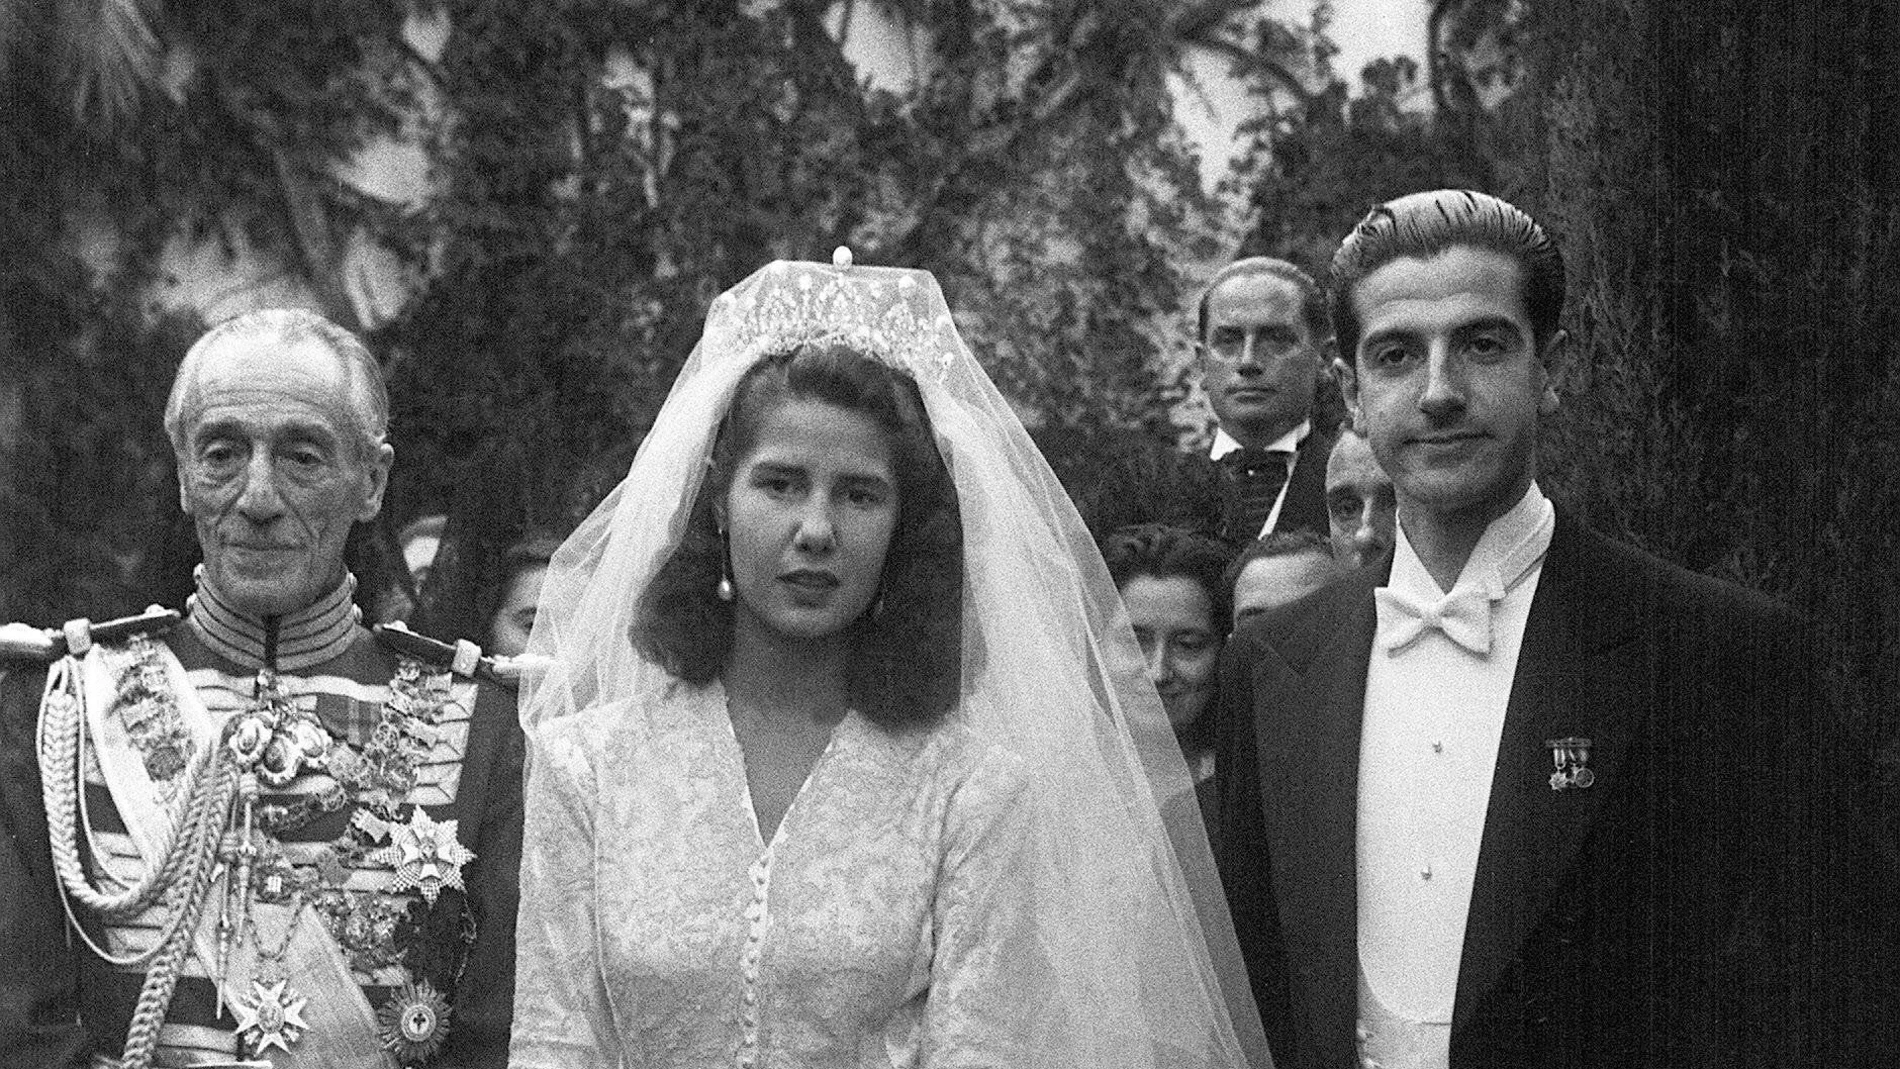  Fotografía de archivo, tomada el 12/10/1947, de la Duquesa de Alba, Cayetana Fitz-James Stuart y Silva, con Luis Martínez de Irujo y Artacoz, hijo de los duques de Sotomayor, el día de su boda en la Catedral de Sevilla